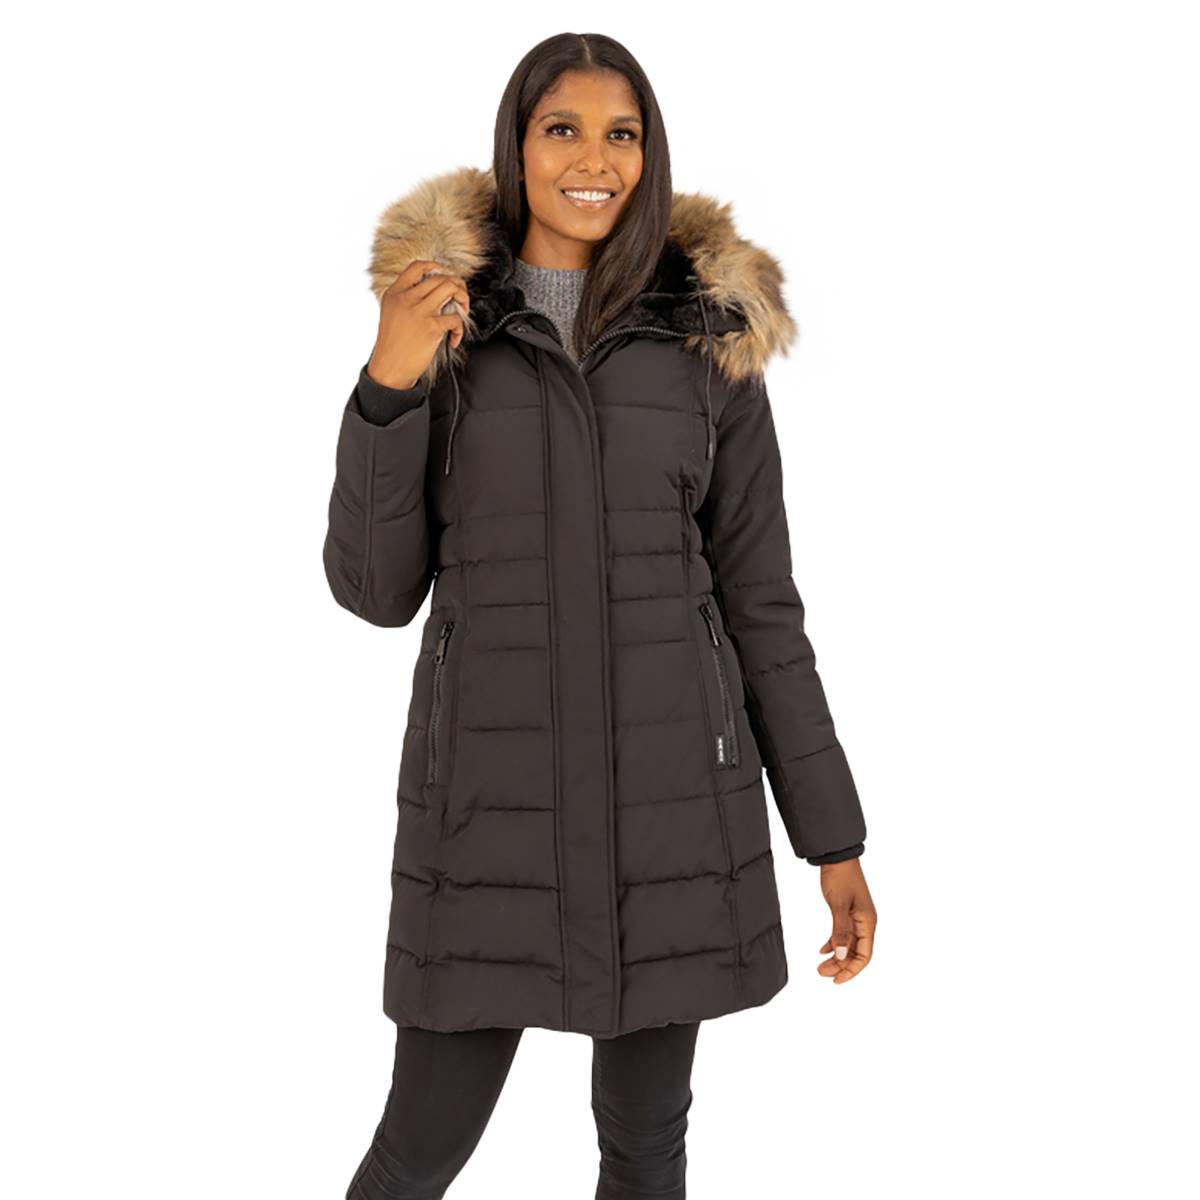 Womens Nine West Puffer Jacket W/Faux Fur Lined Hood